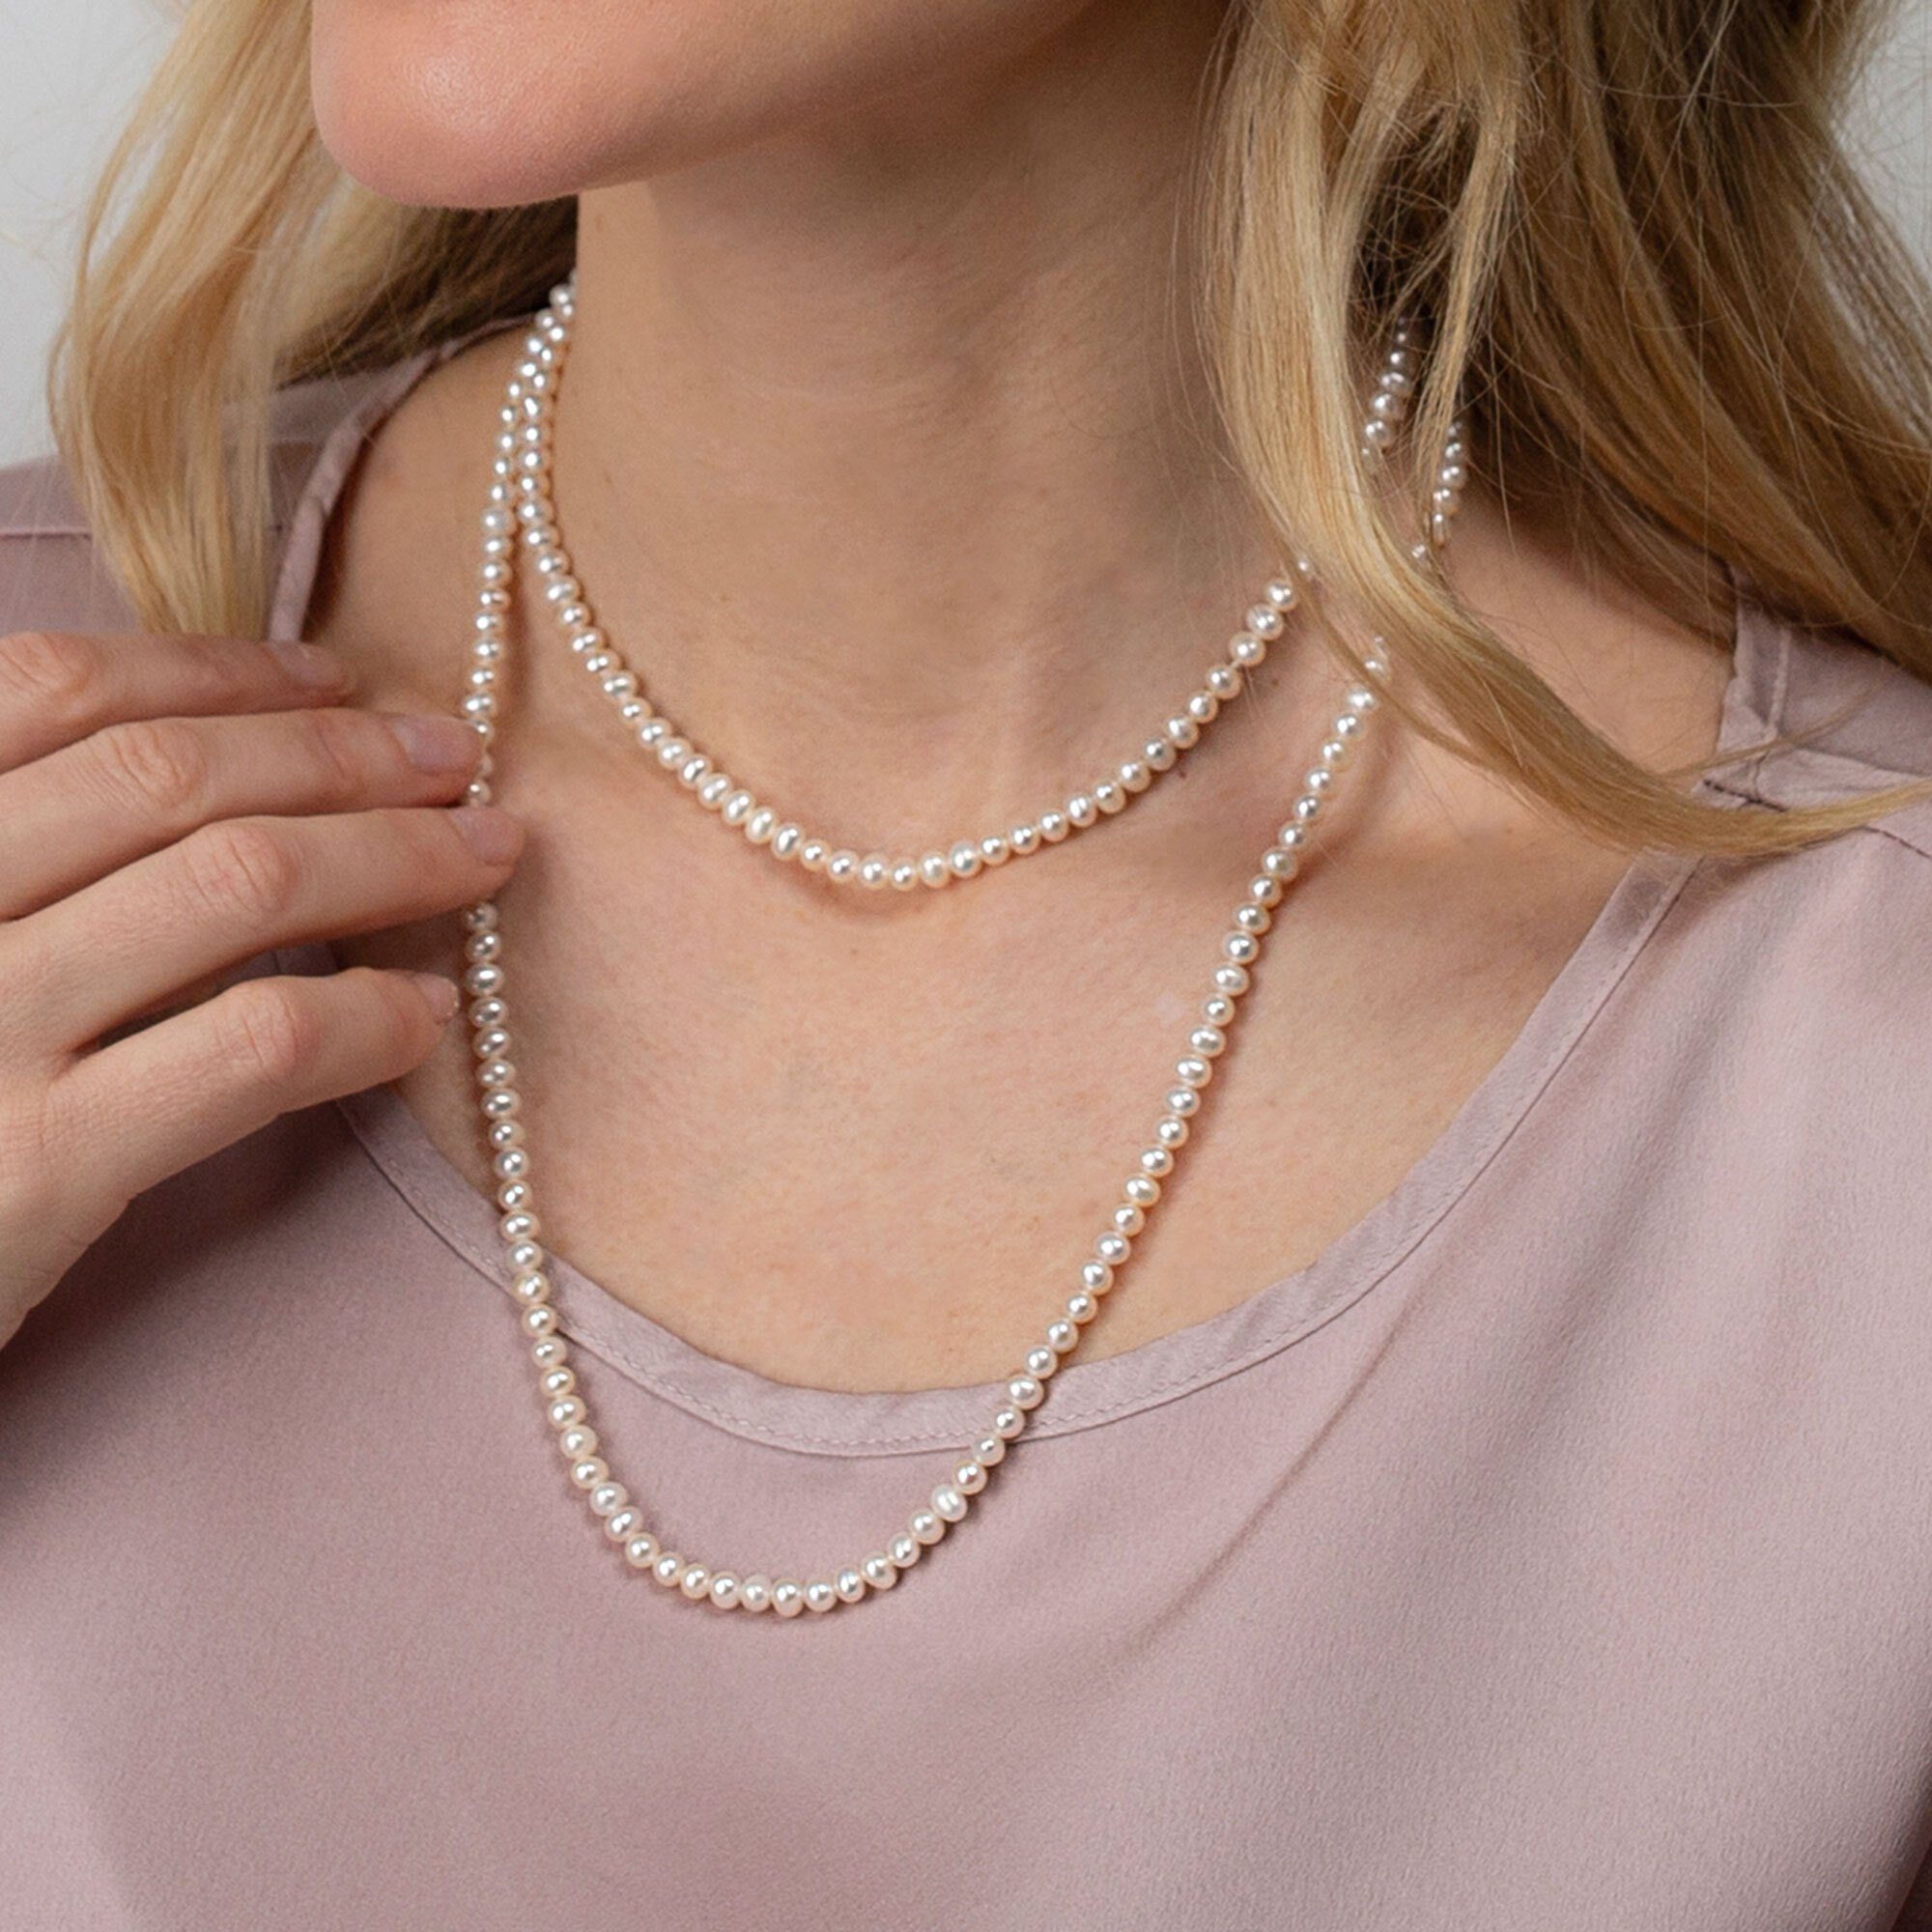 AILORIA Armband MOE armband-halskette silber/weiße Perle perle, Silber/weiße Armband-Halskette